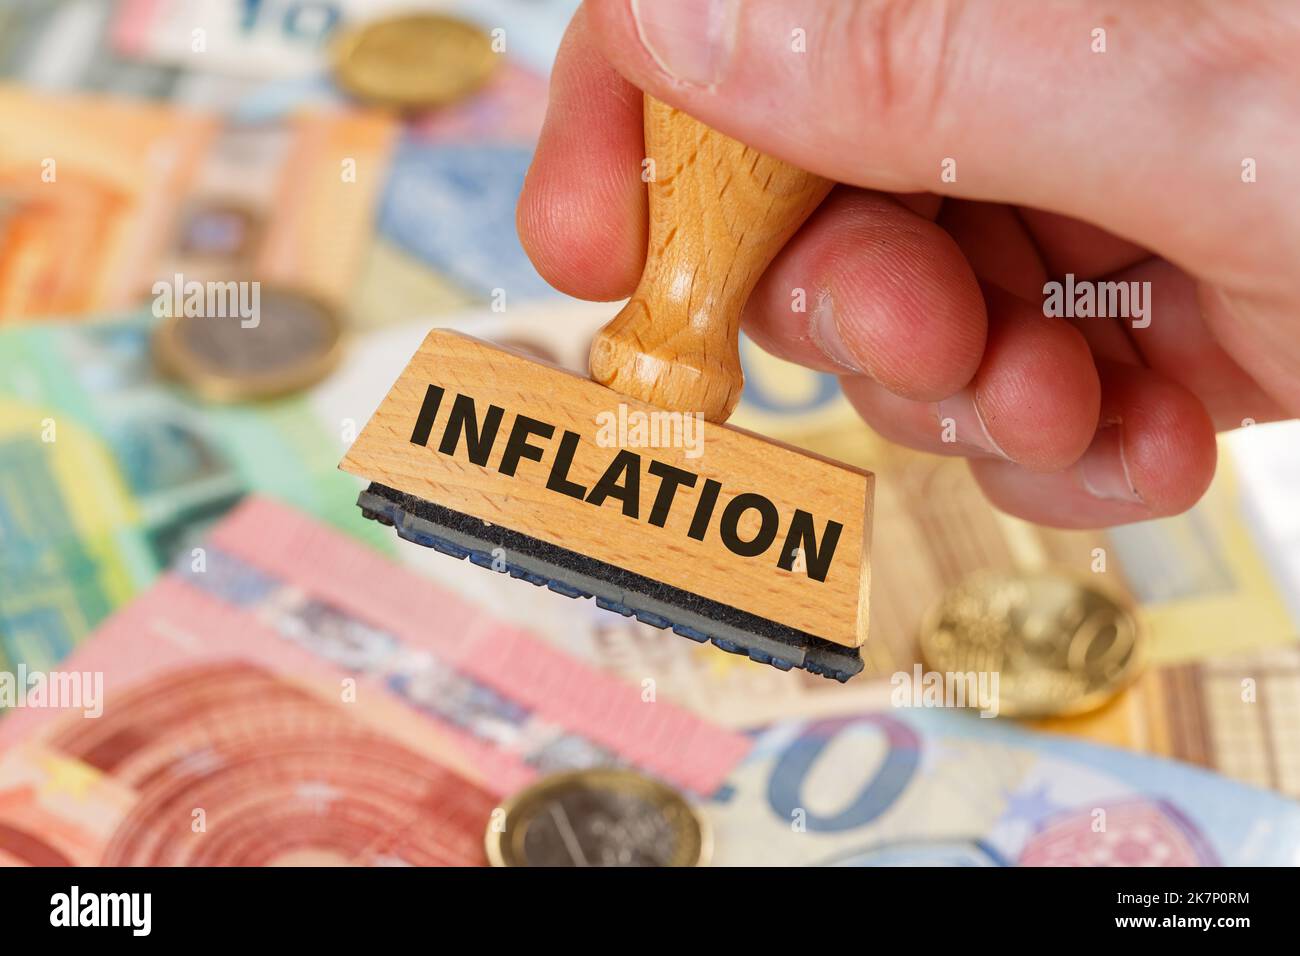 Inflazione simbolica denaro foto finanza e crisi economica con il concetto di francobollo economia business Foto Stock